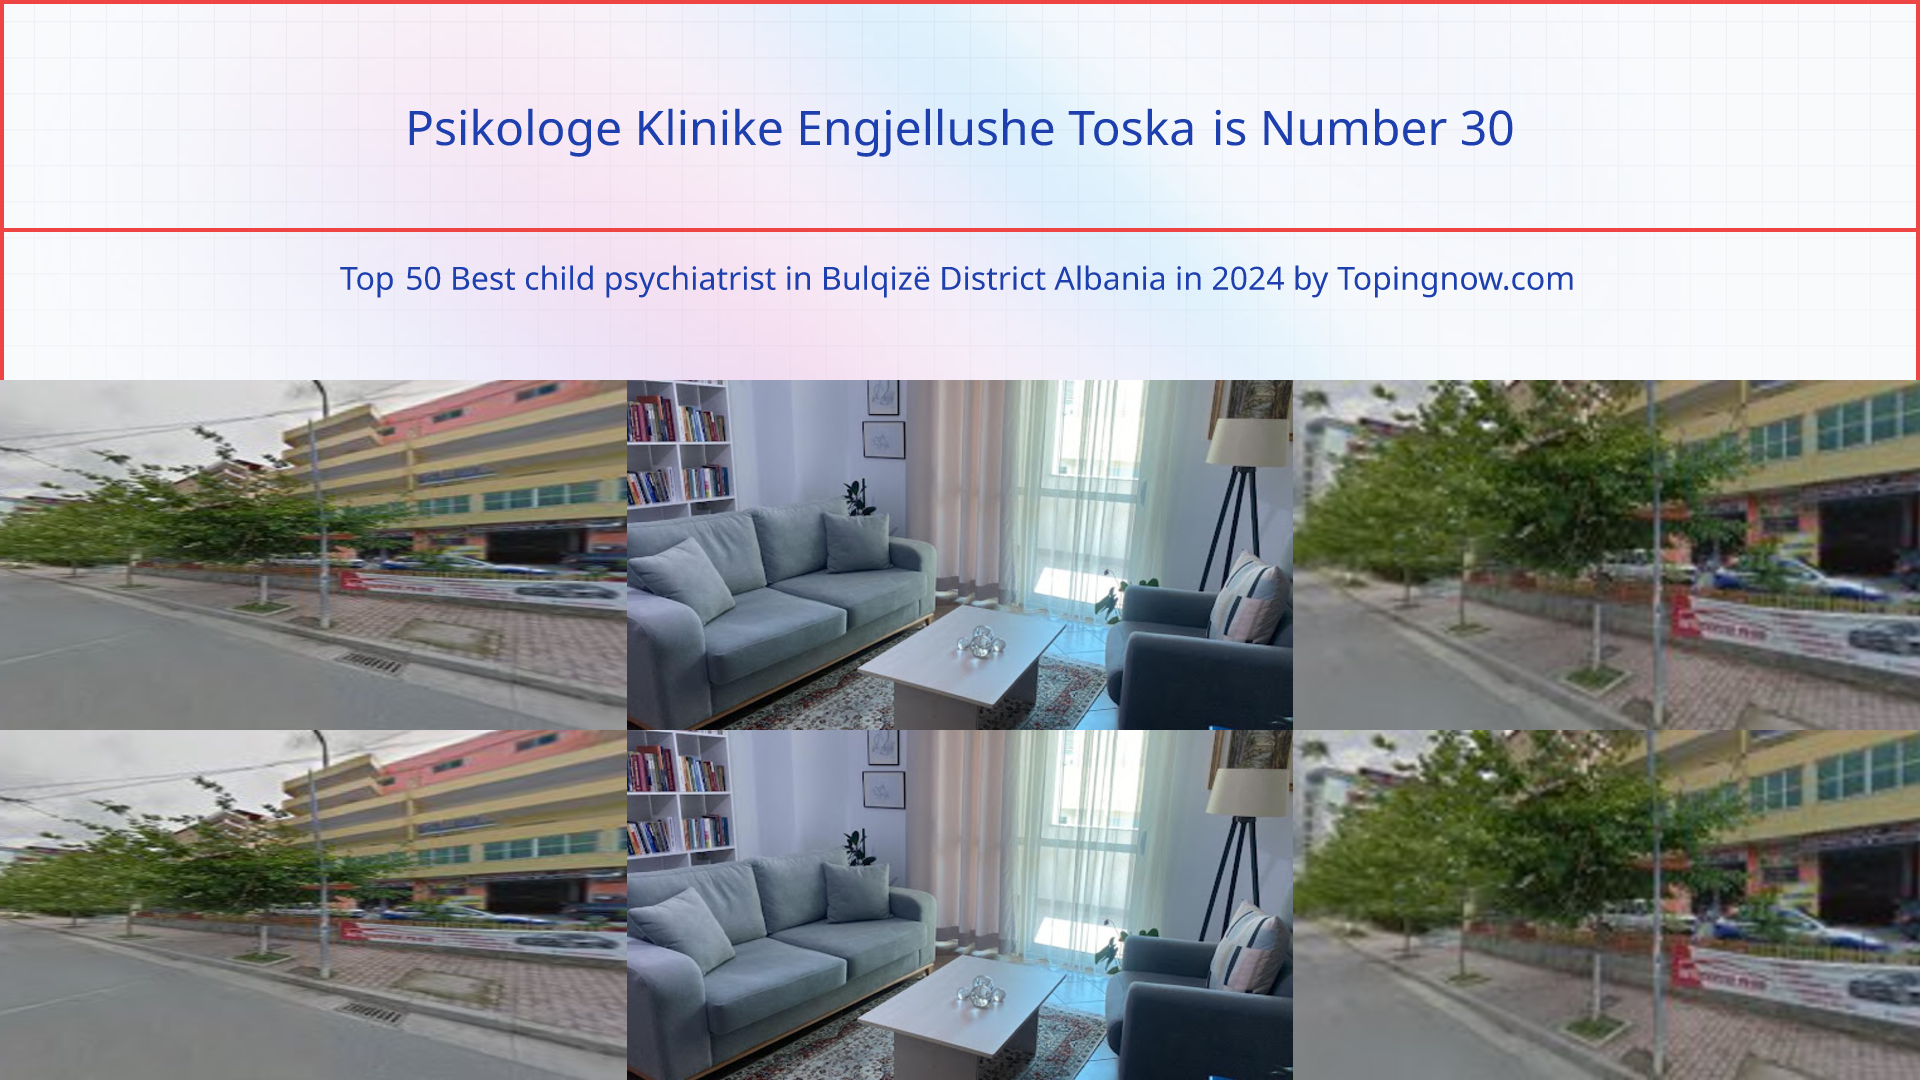 Psikologe Klinike Engjellushe Toska: Top 50 Best child psychiatrist in Bulqizë District Albania in 2024